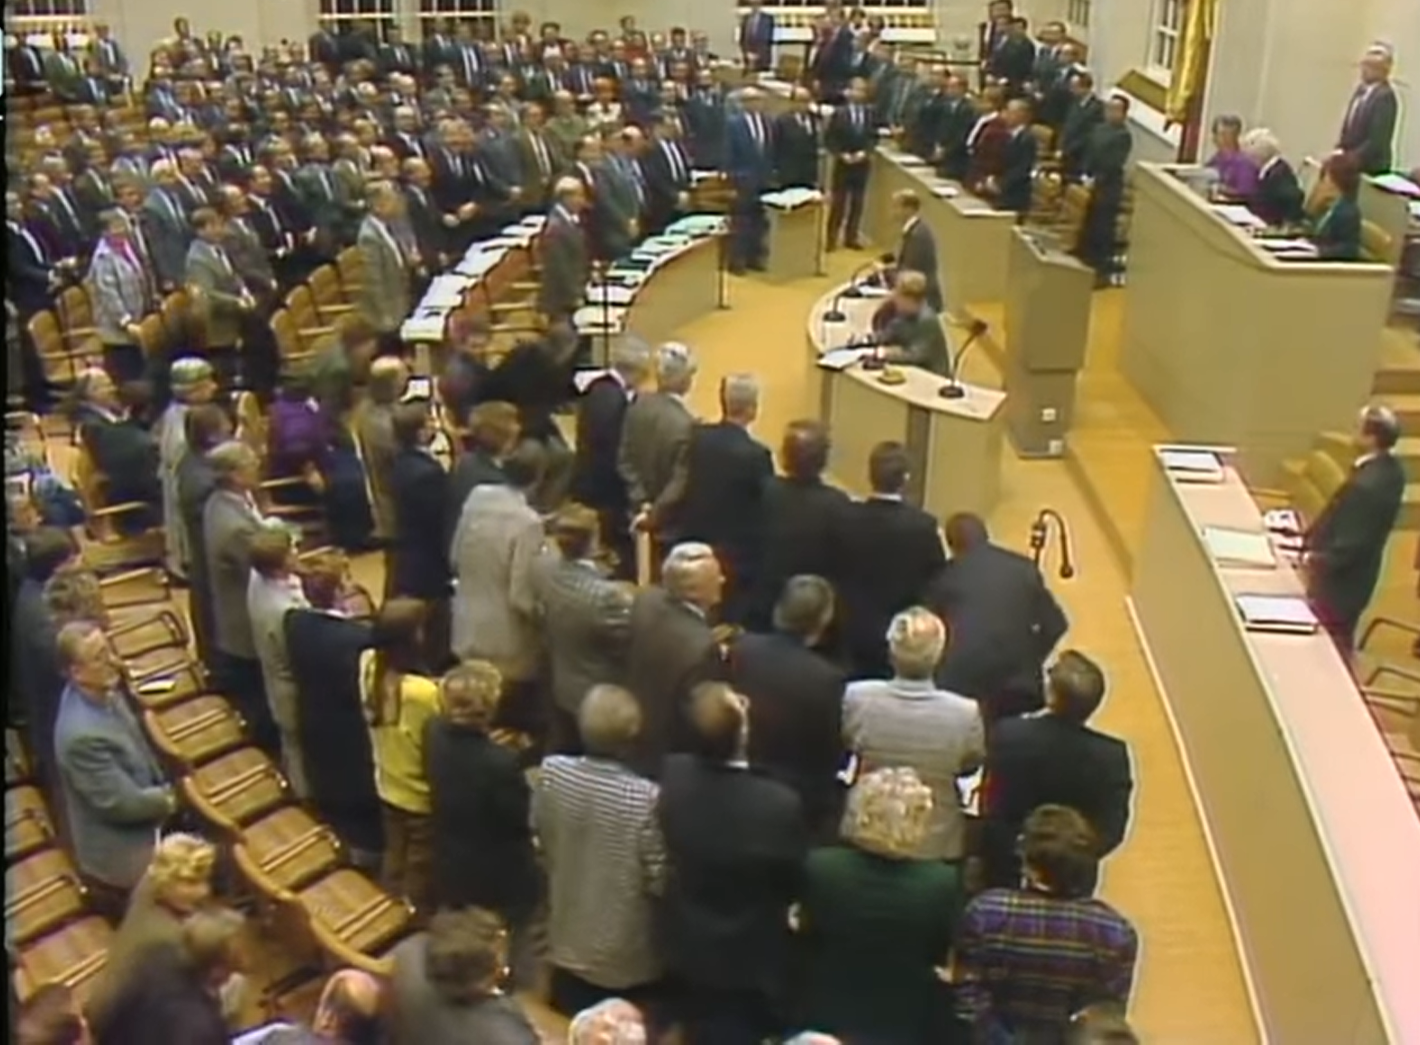 U tom trenutku, u 500 kilometara udaljenom Bonnu, u glavnom gradu Zapadne Njemačke, prekinuta je sjednica Bundestaga. Zastupnici su spontano počeli pjevati himnu, a <b>Willy Brandt</b>, kancelar kojem se pripisuje najviše zasluga za spajanje istoka i zapada, pjevao je sa suzom u oku.